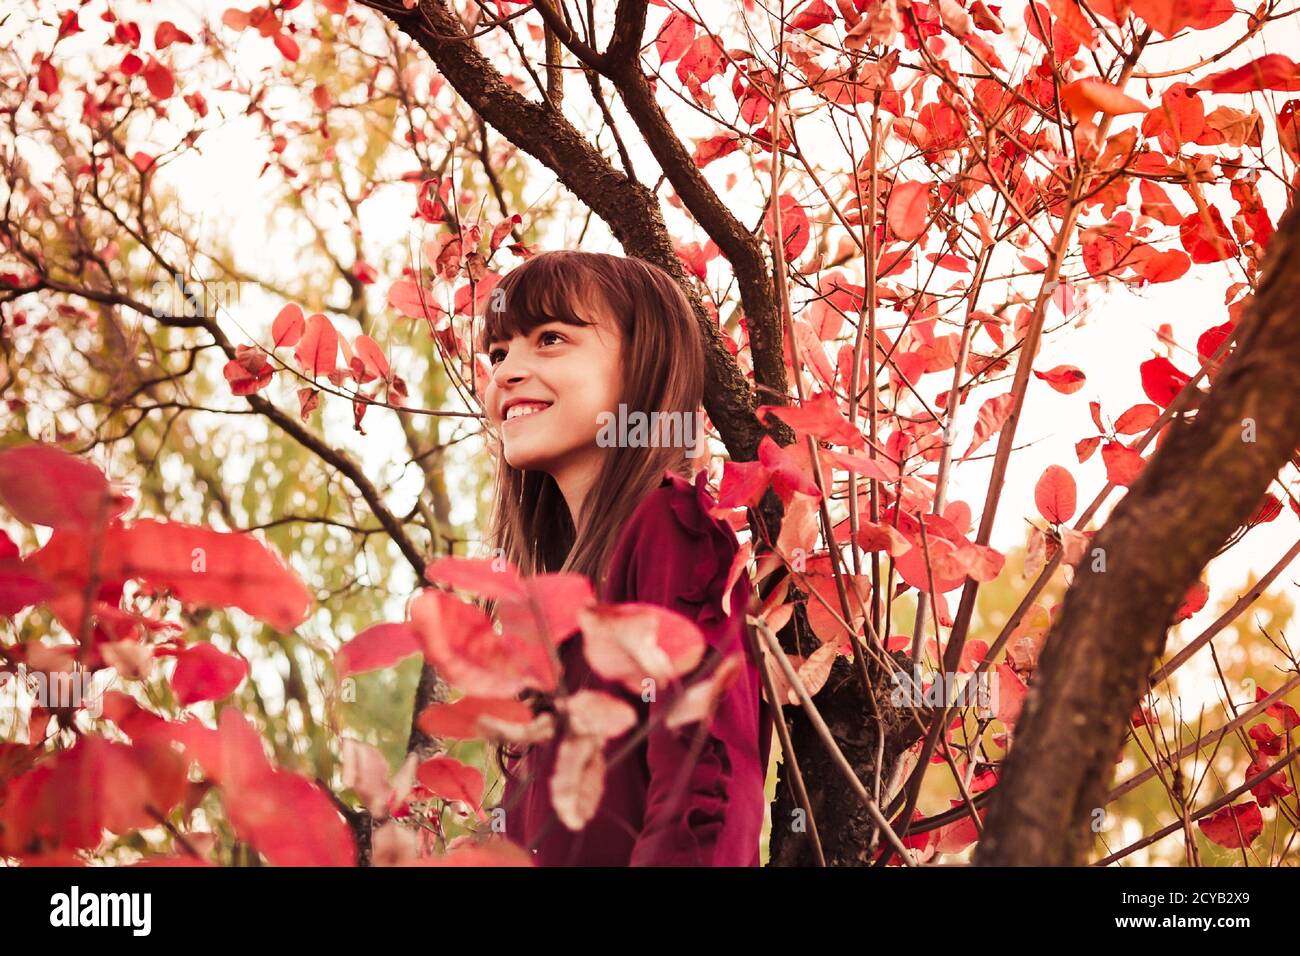 Herbst Natur Porträt von lächelnd teen Mädchen in der Nähe der Roter Laubbaum Stockfoto